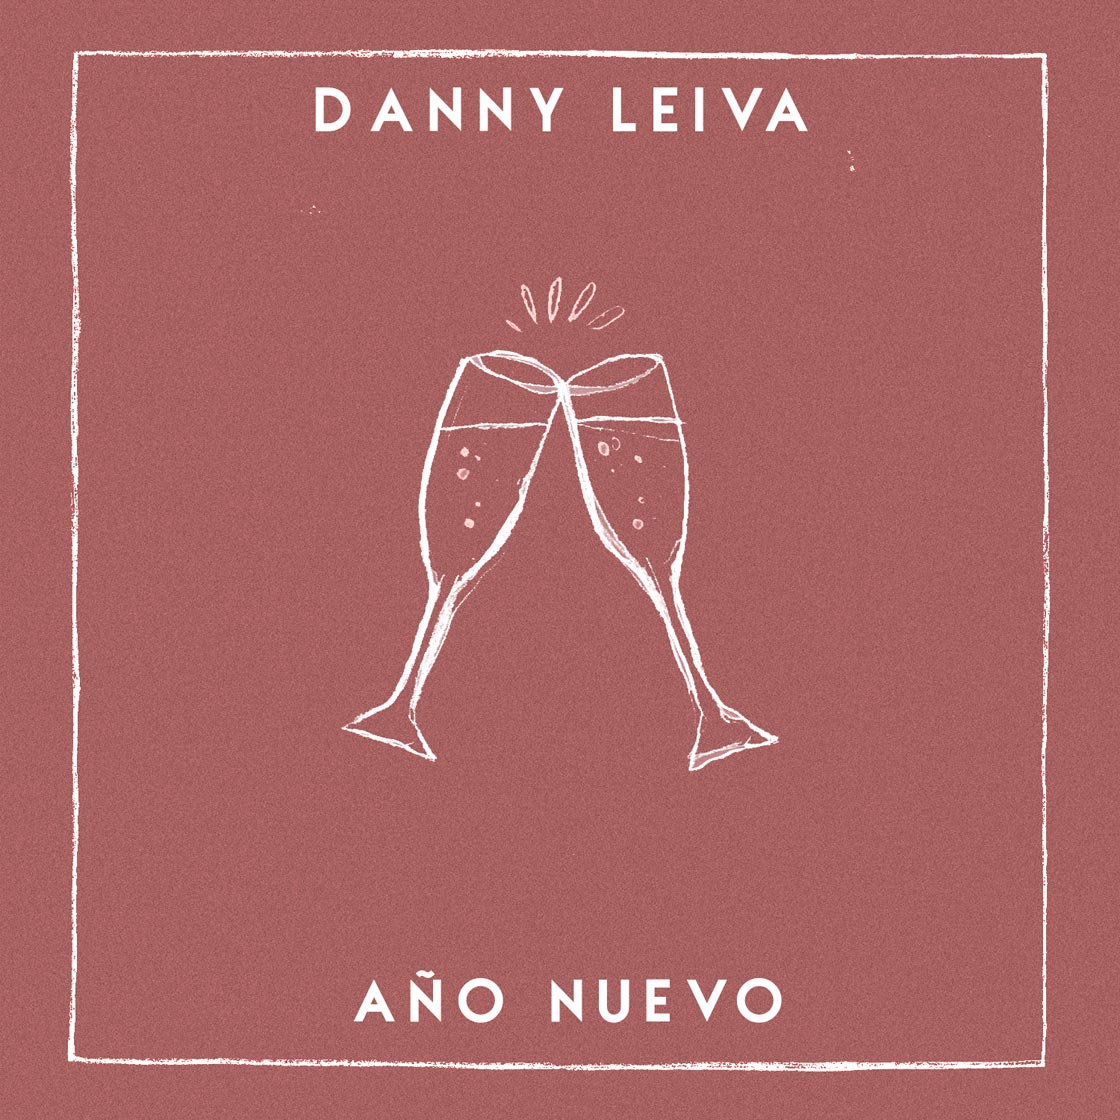 Danny Leiva: Año nuevo, la portada de la canción